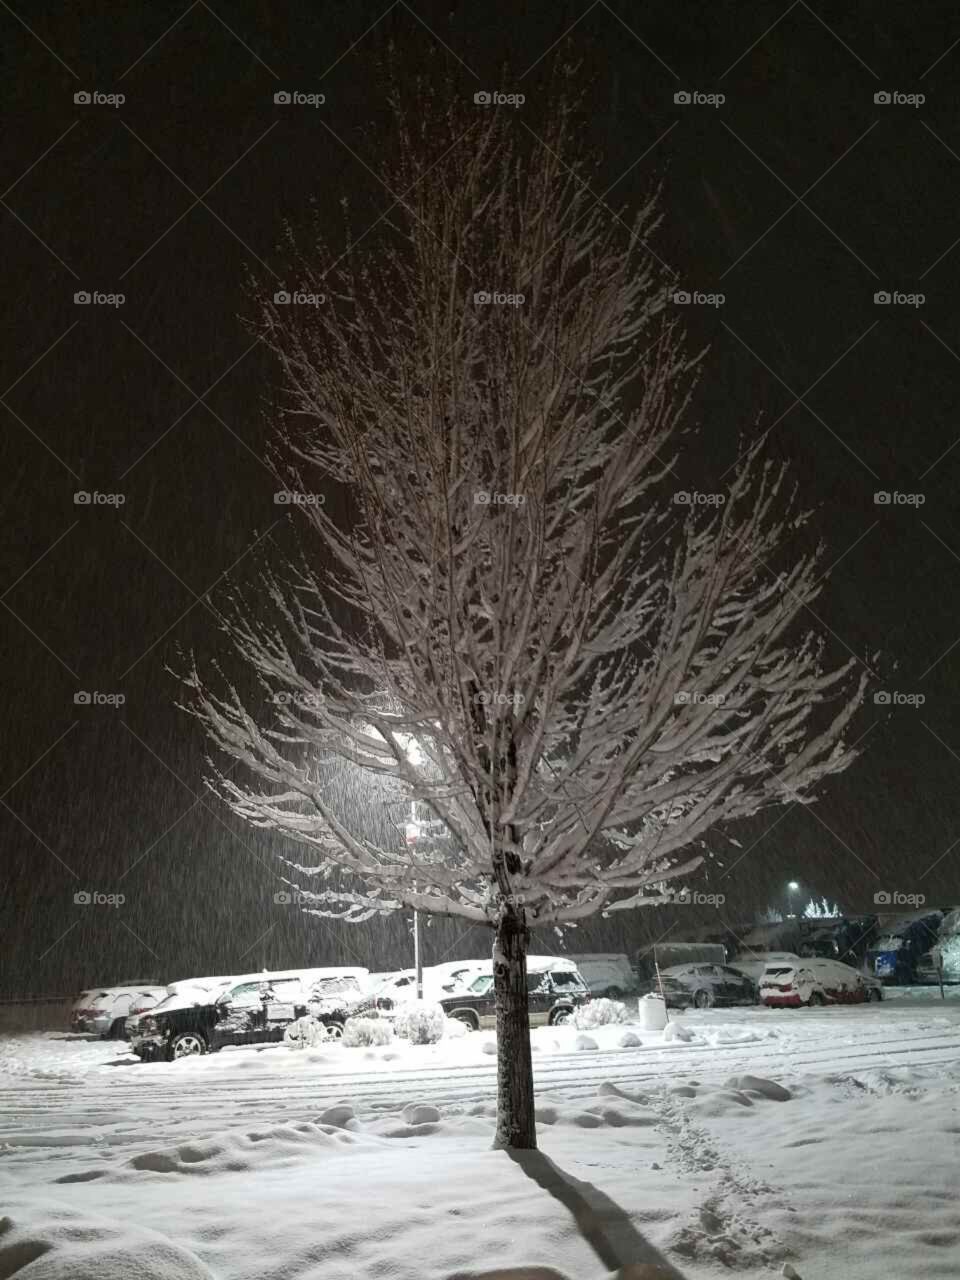 Wintertime snowy tree